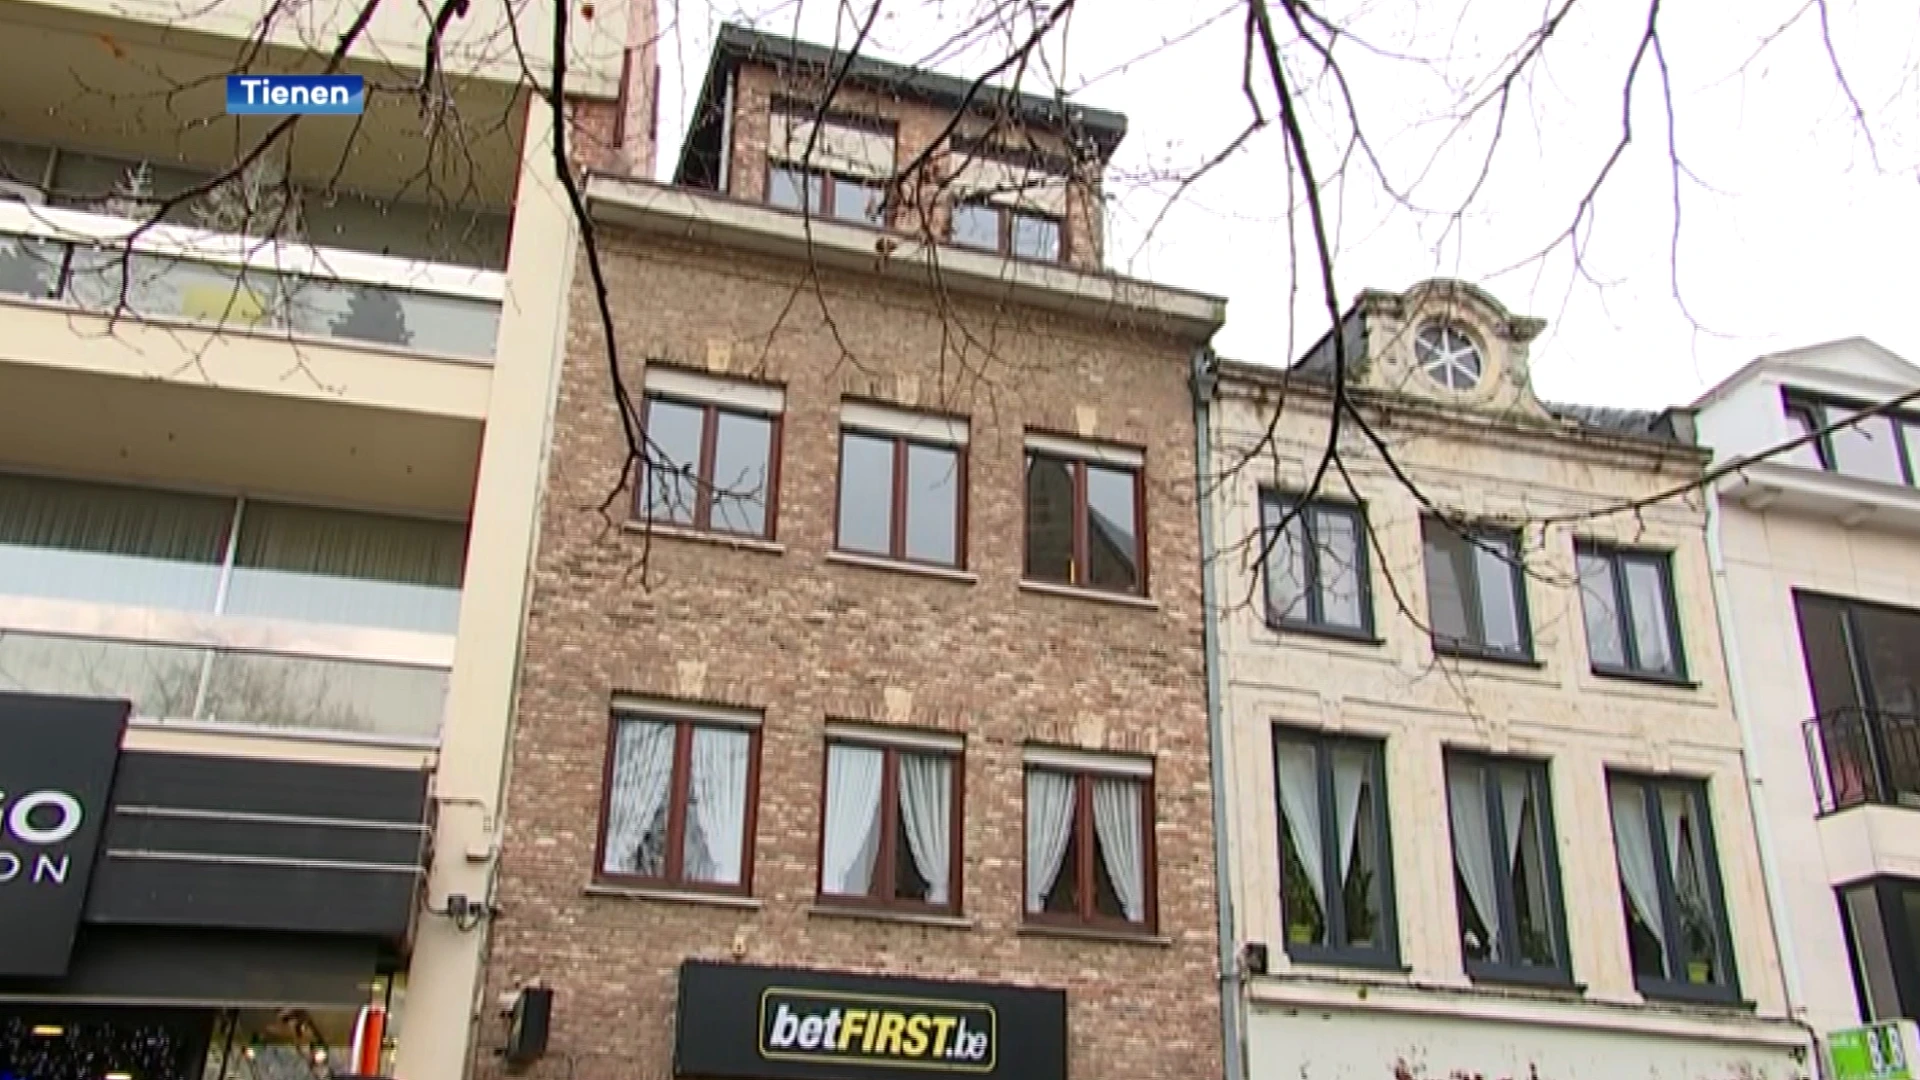 Gokkantoor "Ladbrokes" op komst in Tienen: "Belangrijk dat er toezicht gehouden wordt"